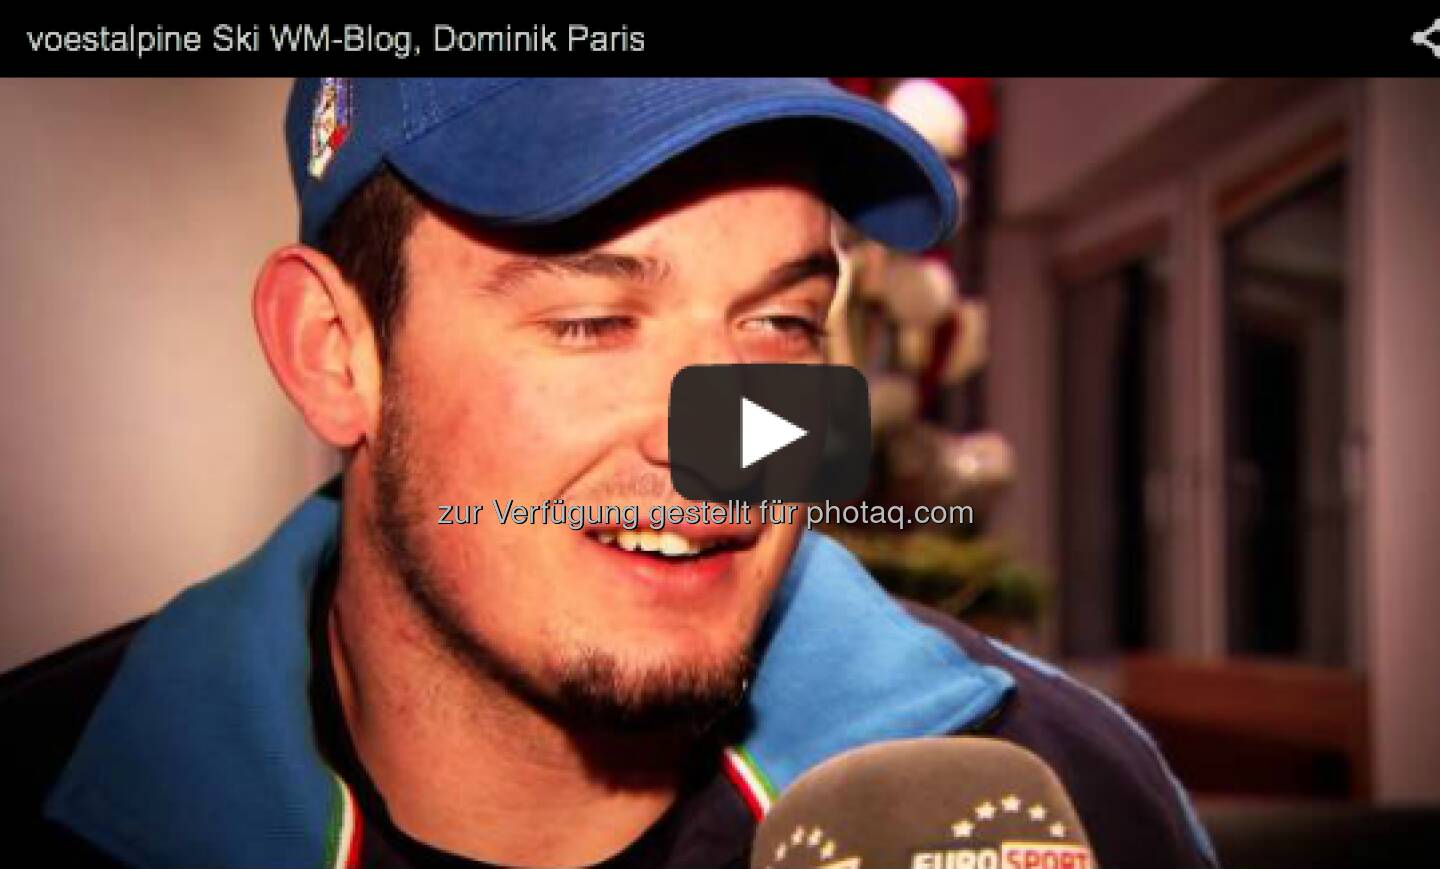 Er ist der Silber-Medaillengewinner der Abfahrt in Schladming und Führender im Abfahrts-Weltcup, Interview mit Dominik Paris  http://voestalpine-wm-blog.at/2013/02/11/interview-mit-dominik-paris/#.URk6JI7aK_Q